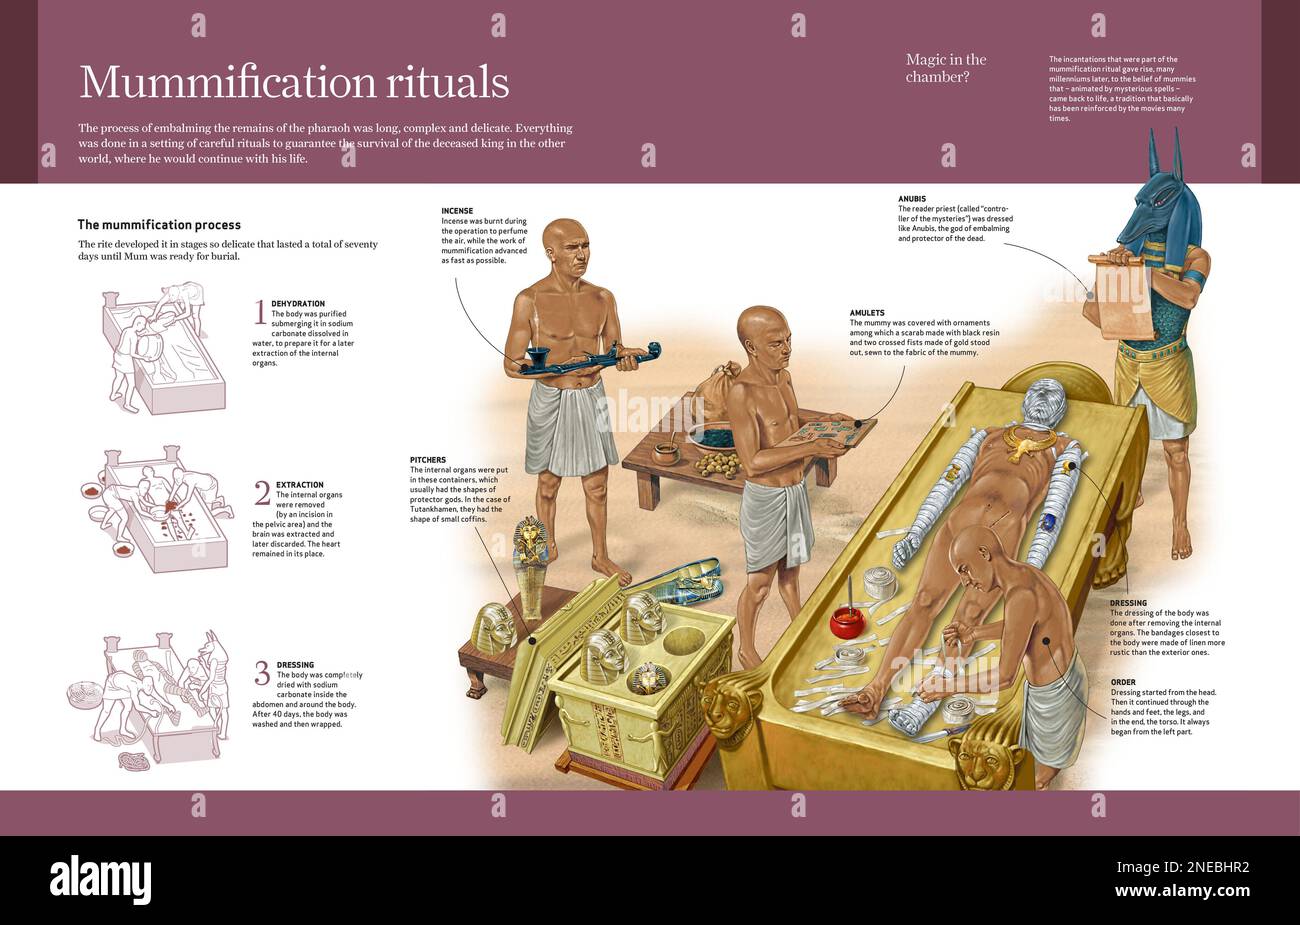 Infografica sul processo che gli egiziani hanno seguito per mummificare i corpi. [Adobe InDesign (.indd); 4960x3188]. Foto Stock